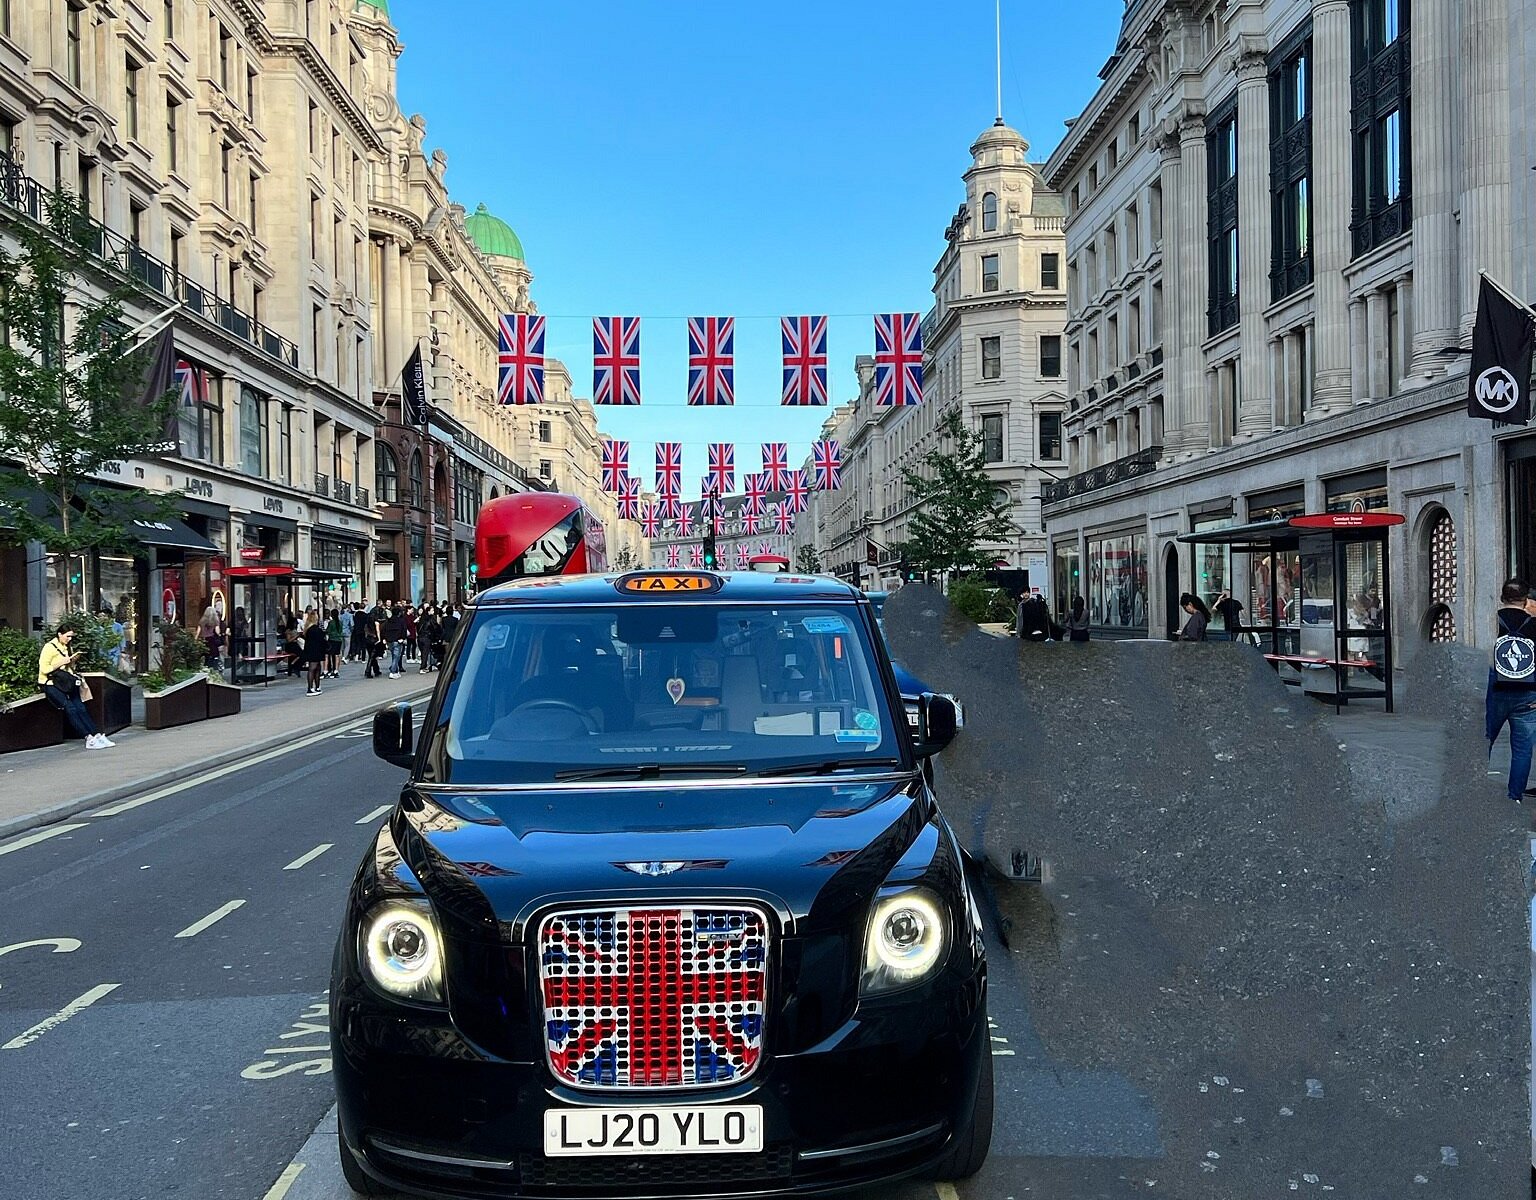 top class black cab tours london